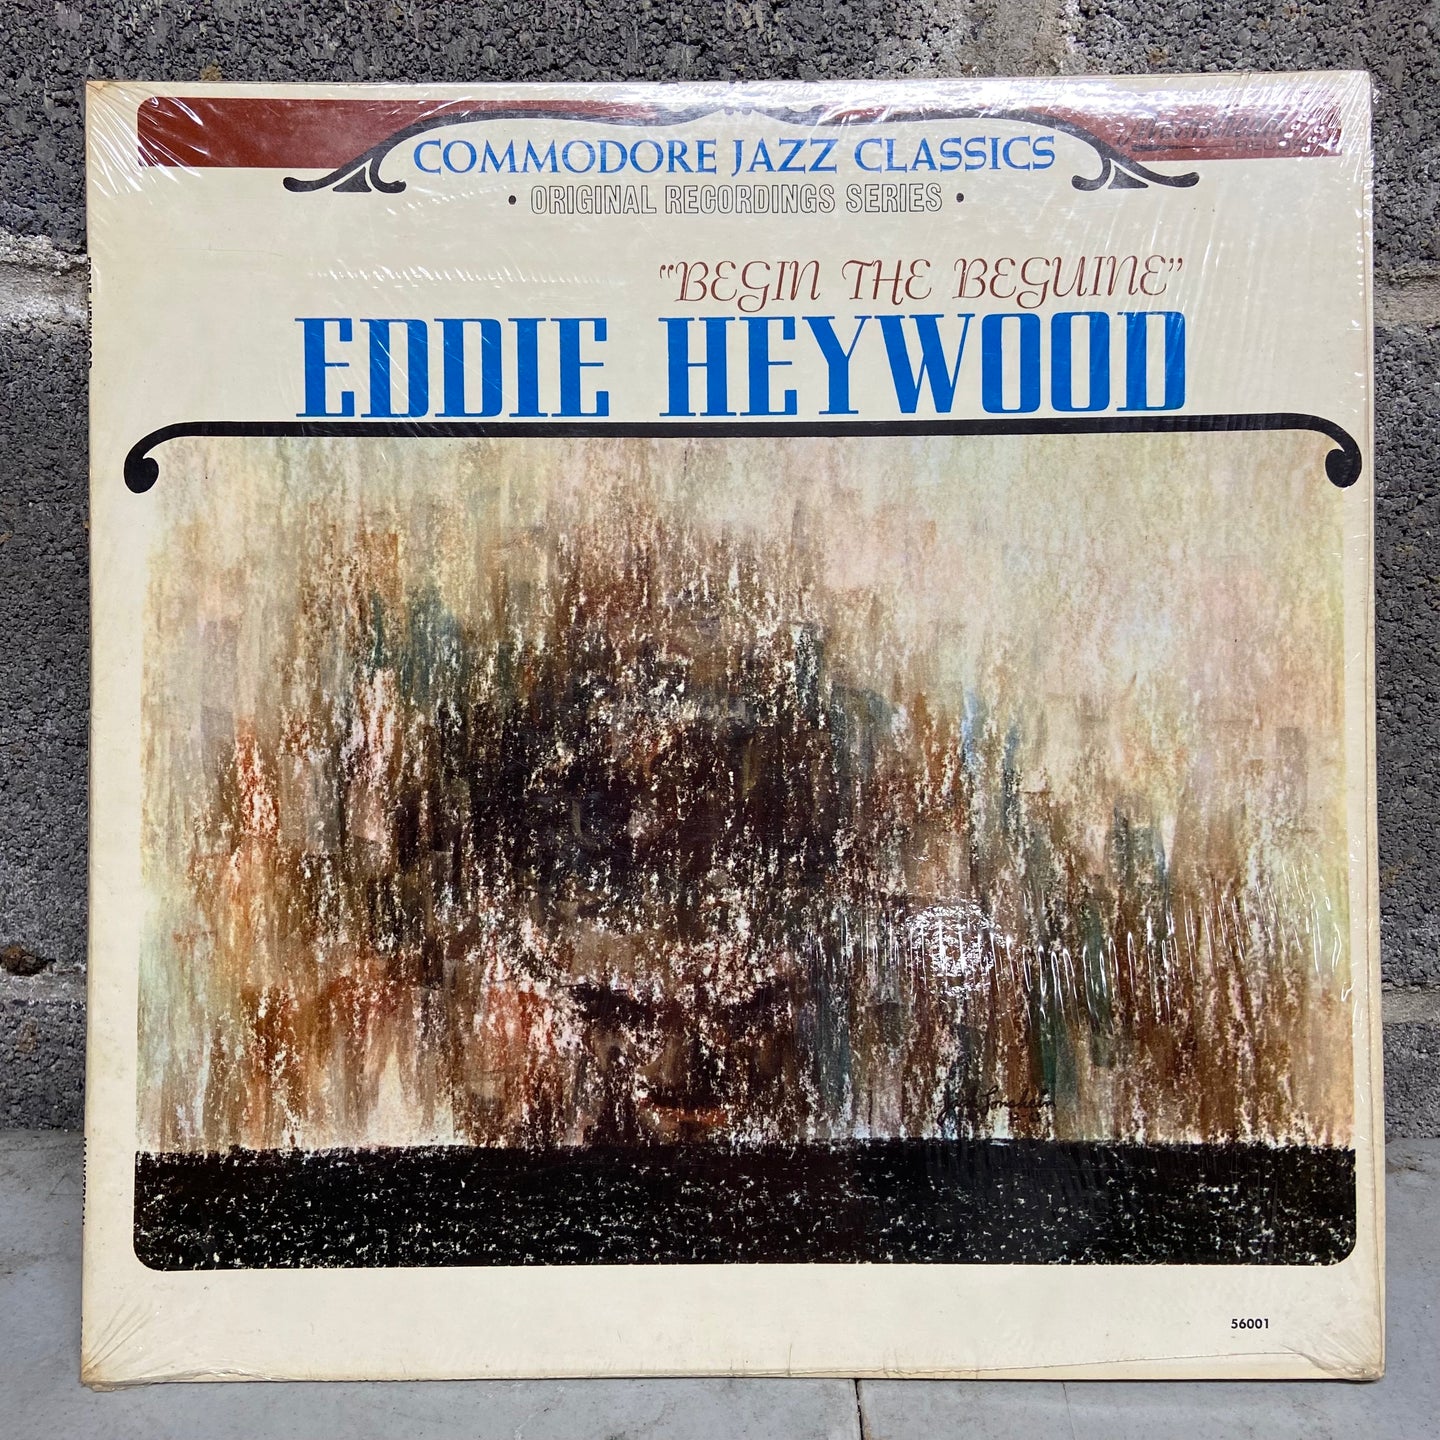 Eddie Heywood – Begin The Beguine